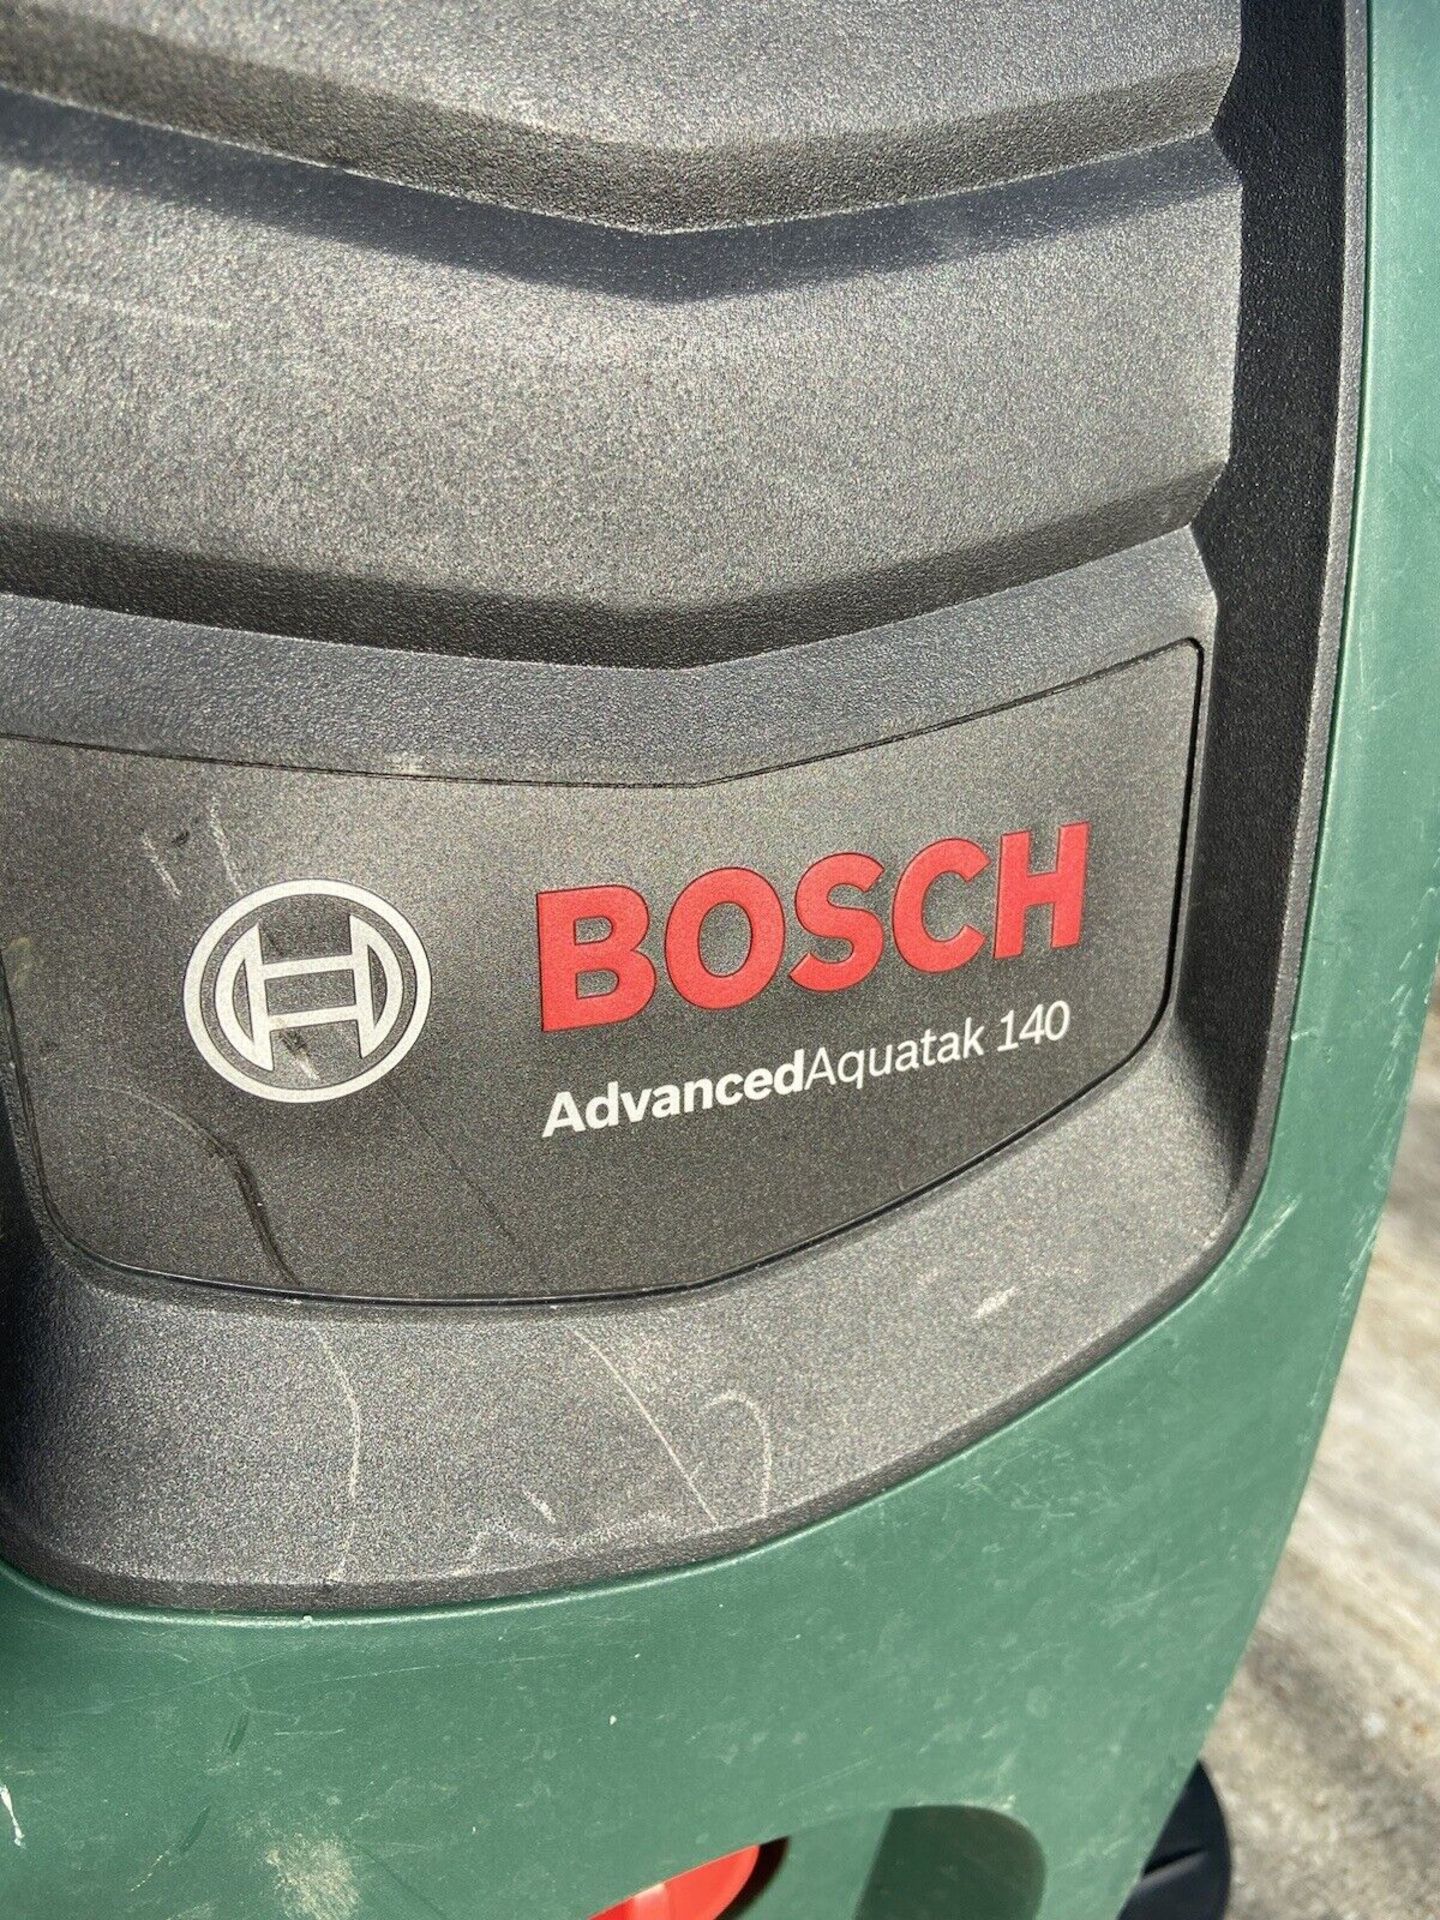 Bosch Pressure Washer - Bild 2 aus 4